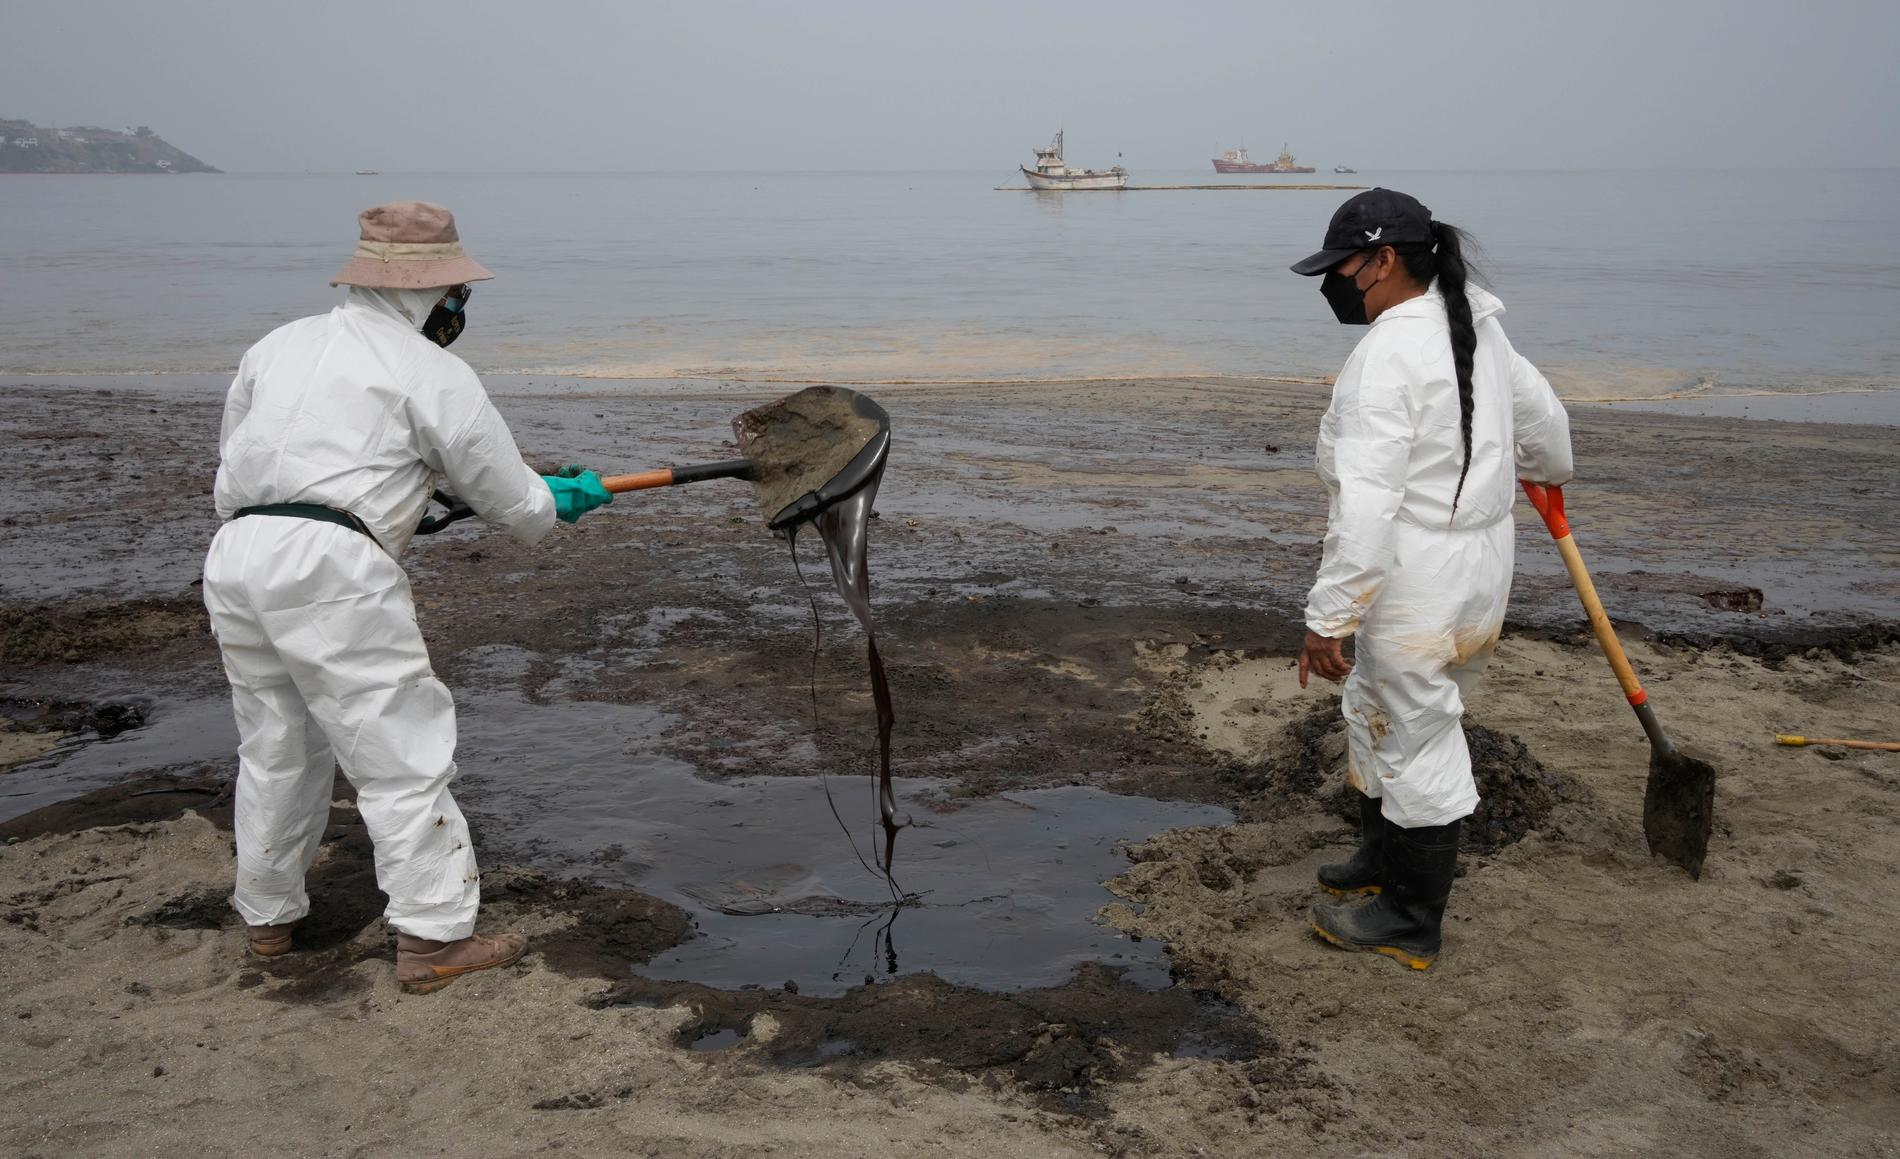 Saneringsarbetare i skyddskläder arbetar med att få bort oljan på stranden Conchitas i Ancón, Peru.